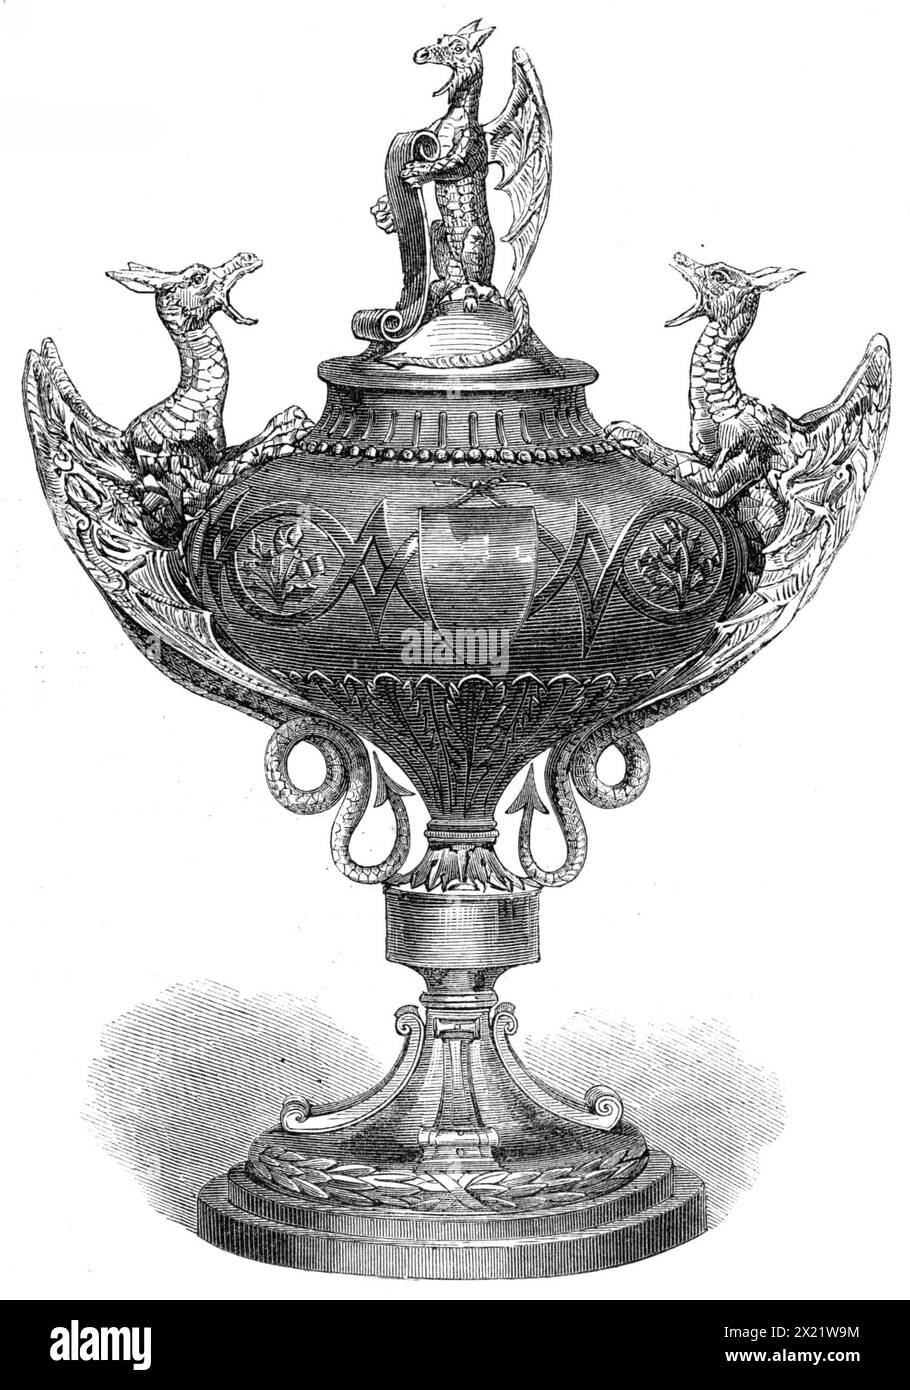 Dragon Cup des produits George's Rifle Volunteer corps, 1865. 'Cette gracieuse petite tasse a été fabriquée par MM. Ortner et Houle, bien James's-Street, sous la direction du lieutenant-colonel l'honneur C. H. Lindsay, commandant la préparation George's Rifles, par qui il a été créé en tant que prix de fusil, en relation avec le équipé George's Challenge vase... la Dragon Cup est de forme antique, et en même temps original dans ses détails. Le stand est surmonté d'une couronne de laurier liée, dont la tige est gravée avec les mots, "la Coupe du Dragon", et la base est ornée de floreated Banque D'Images